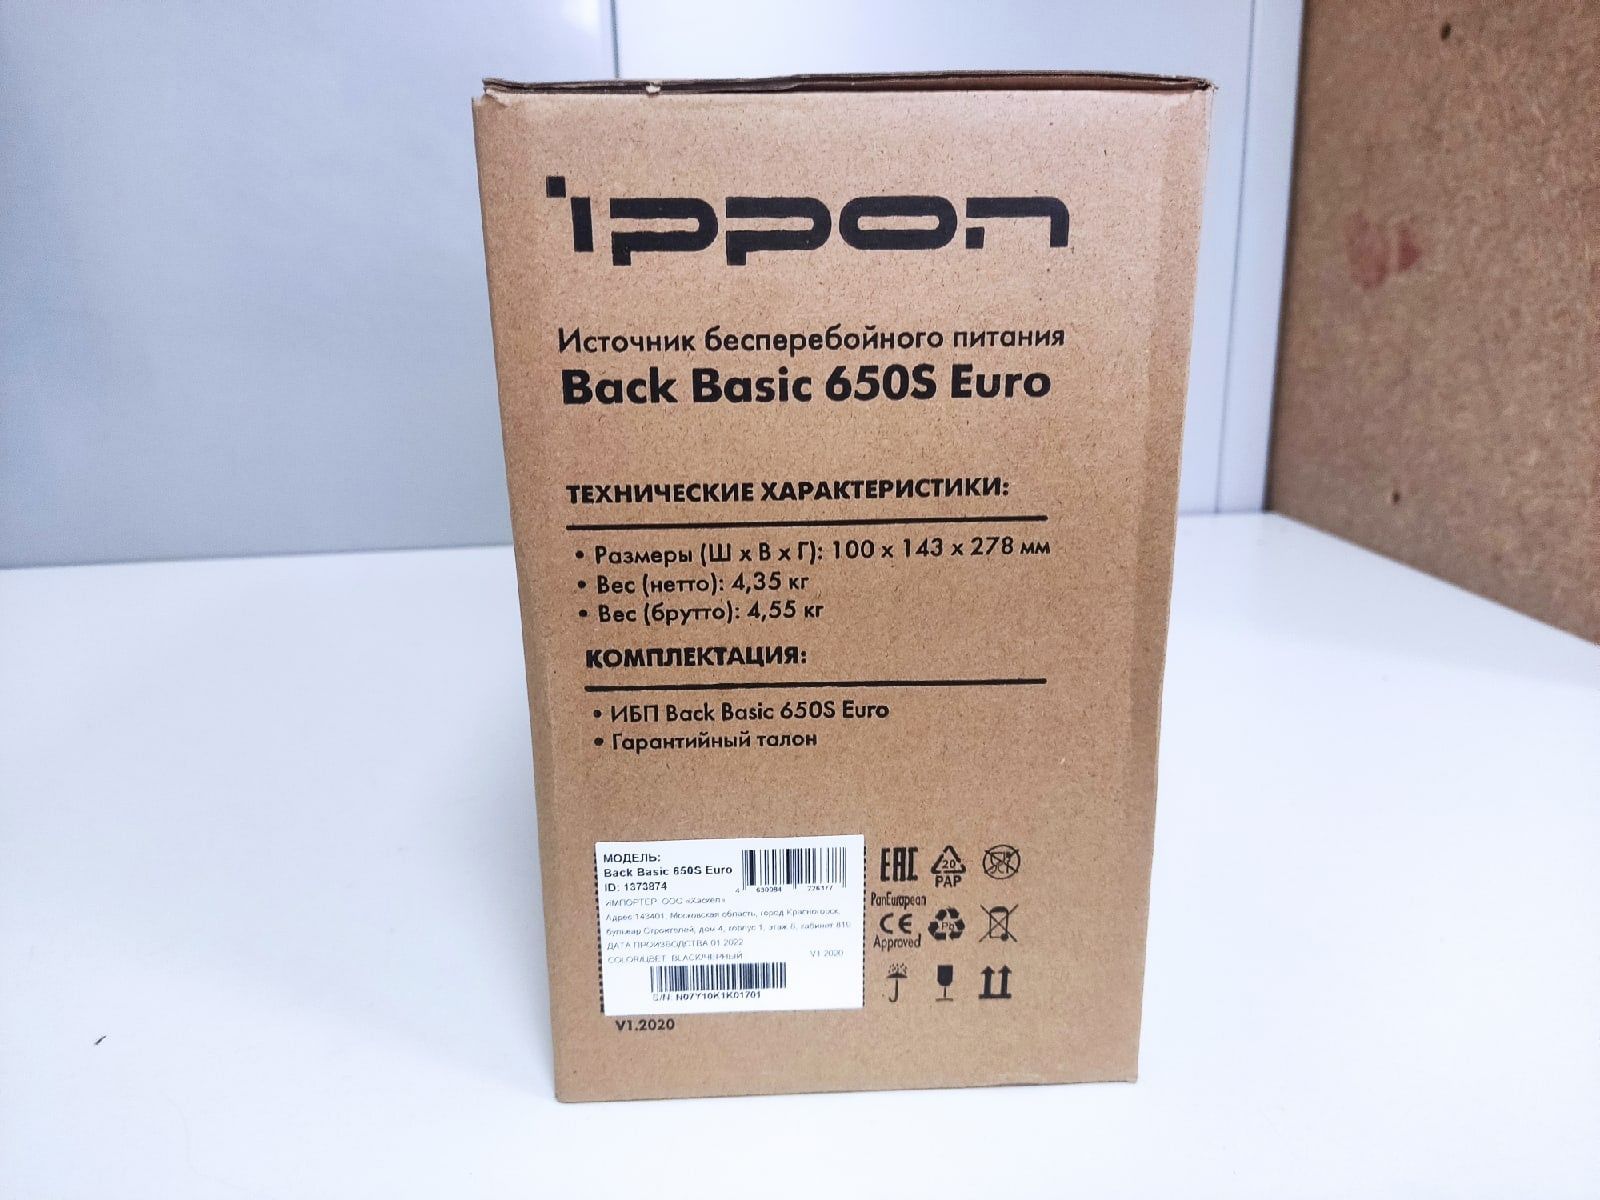 Ippon back Basic 650 Euro. ИБП Ippon back Basic 650 Euro 2 АКБ. Ippon back Basic 650s Euro. Ippon back basic 650s